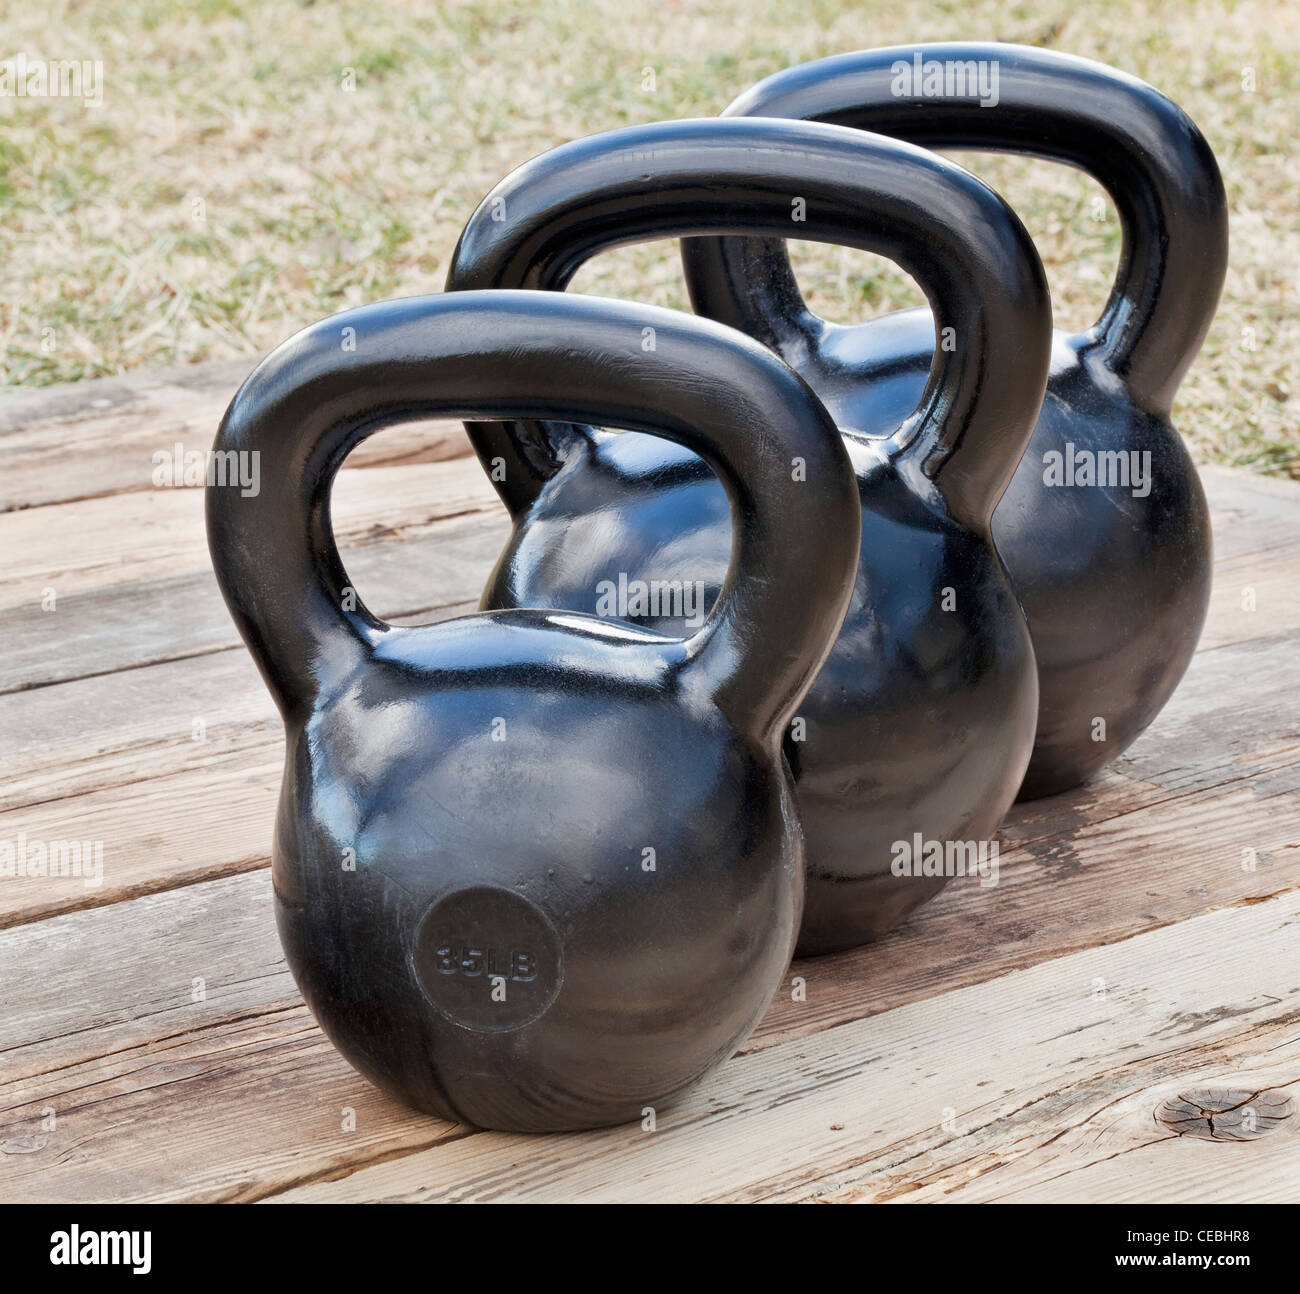 Trois kettlebell fer noir pour la formation de poids (35 et 50 lb) sur le pont de bois, en plein air avec des groupes grunge réflexions ciel Banque D'Images